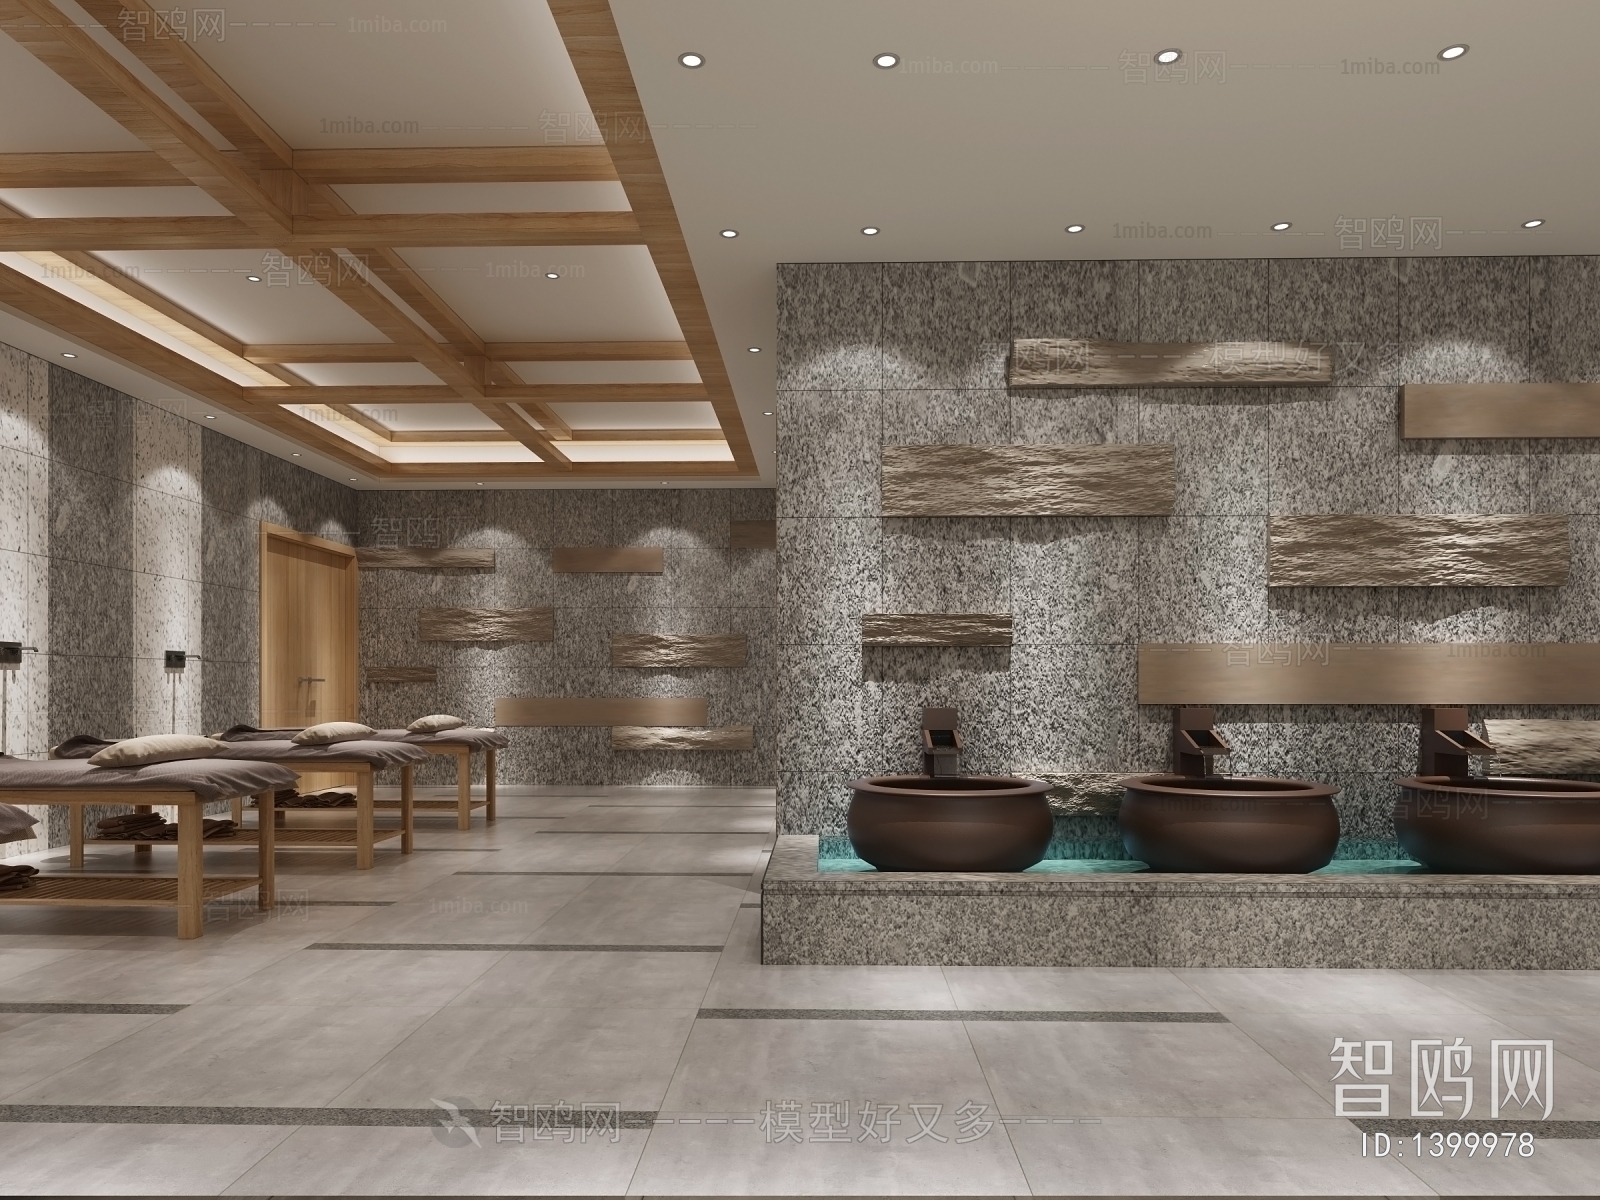 新中式洗浴中心